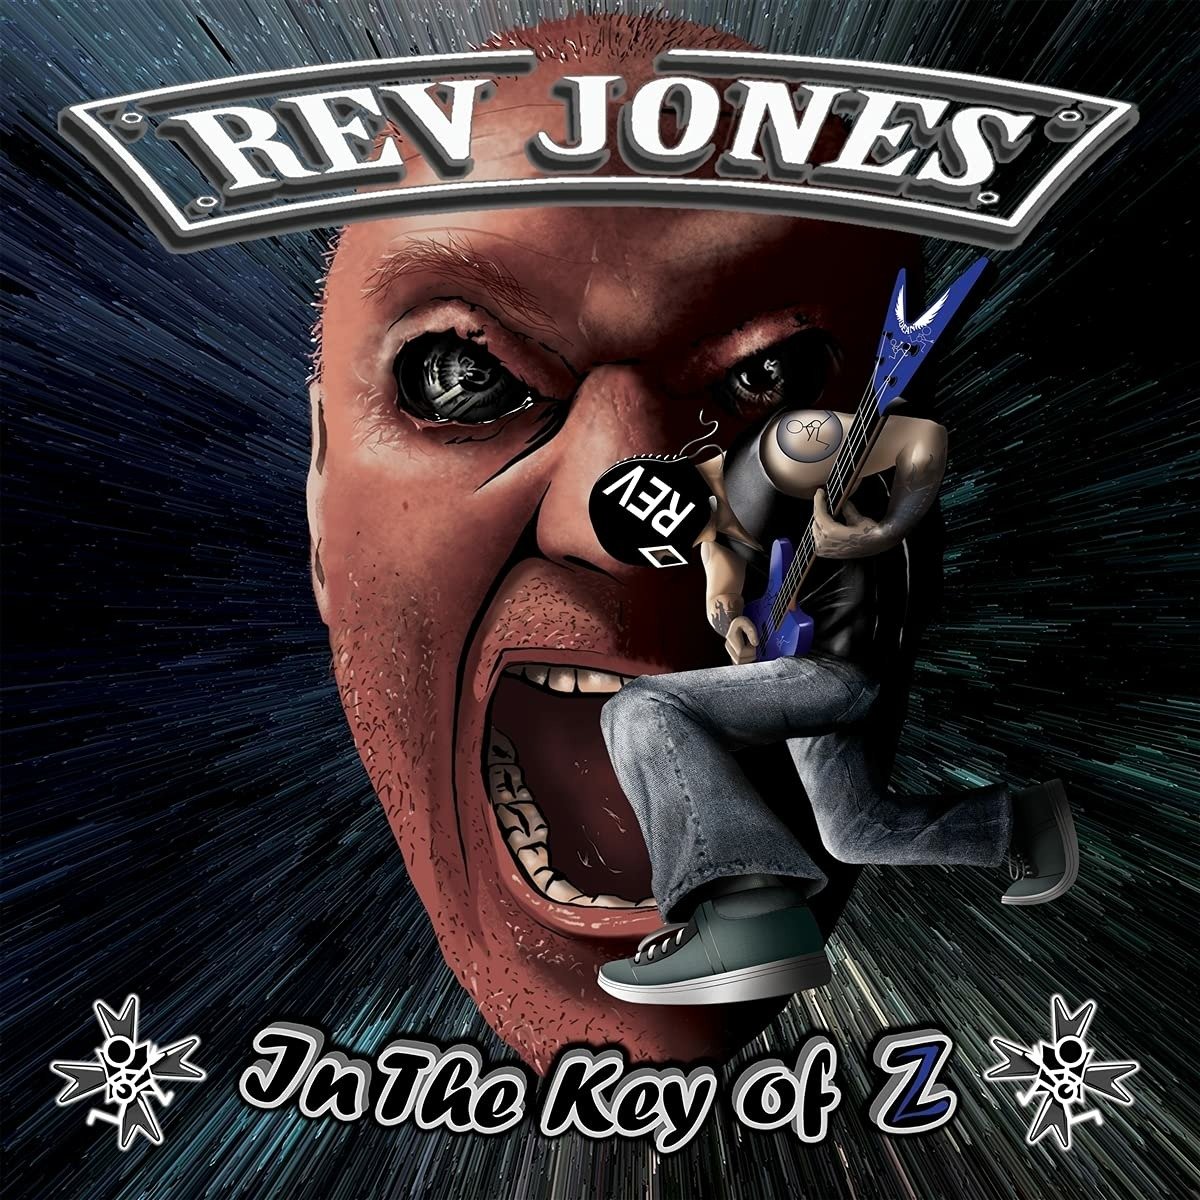 CD Shop - REV JONES IN THE KEY OF Z